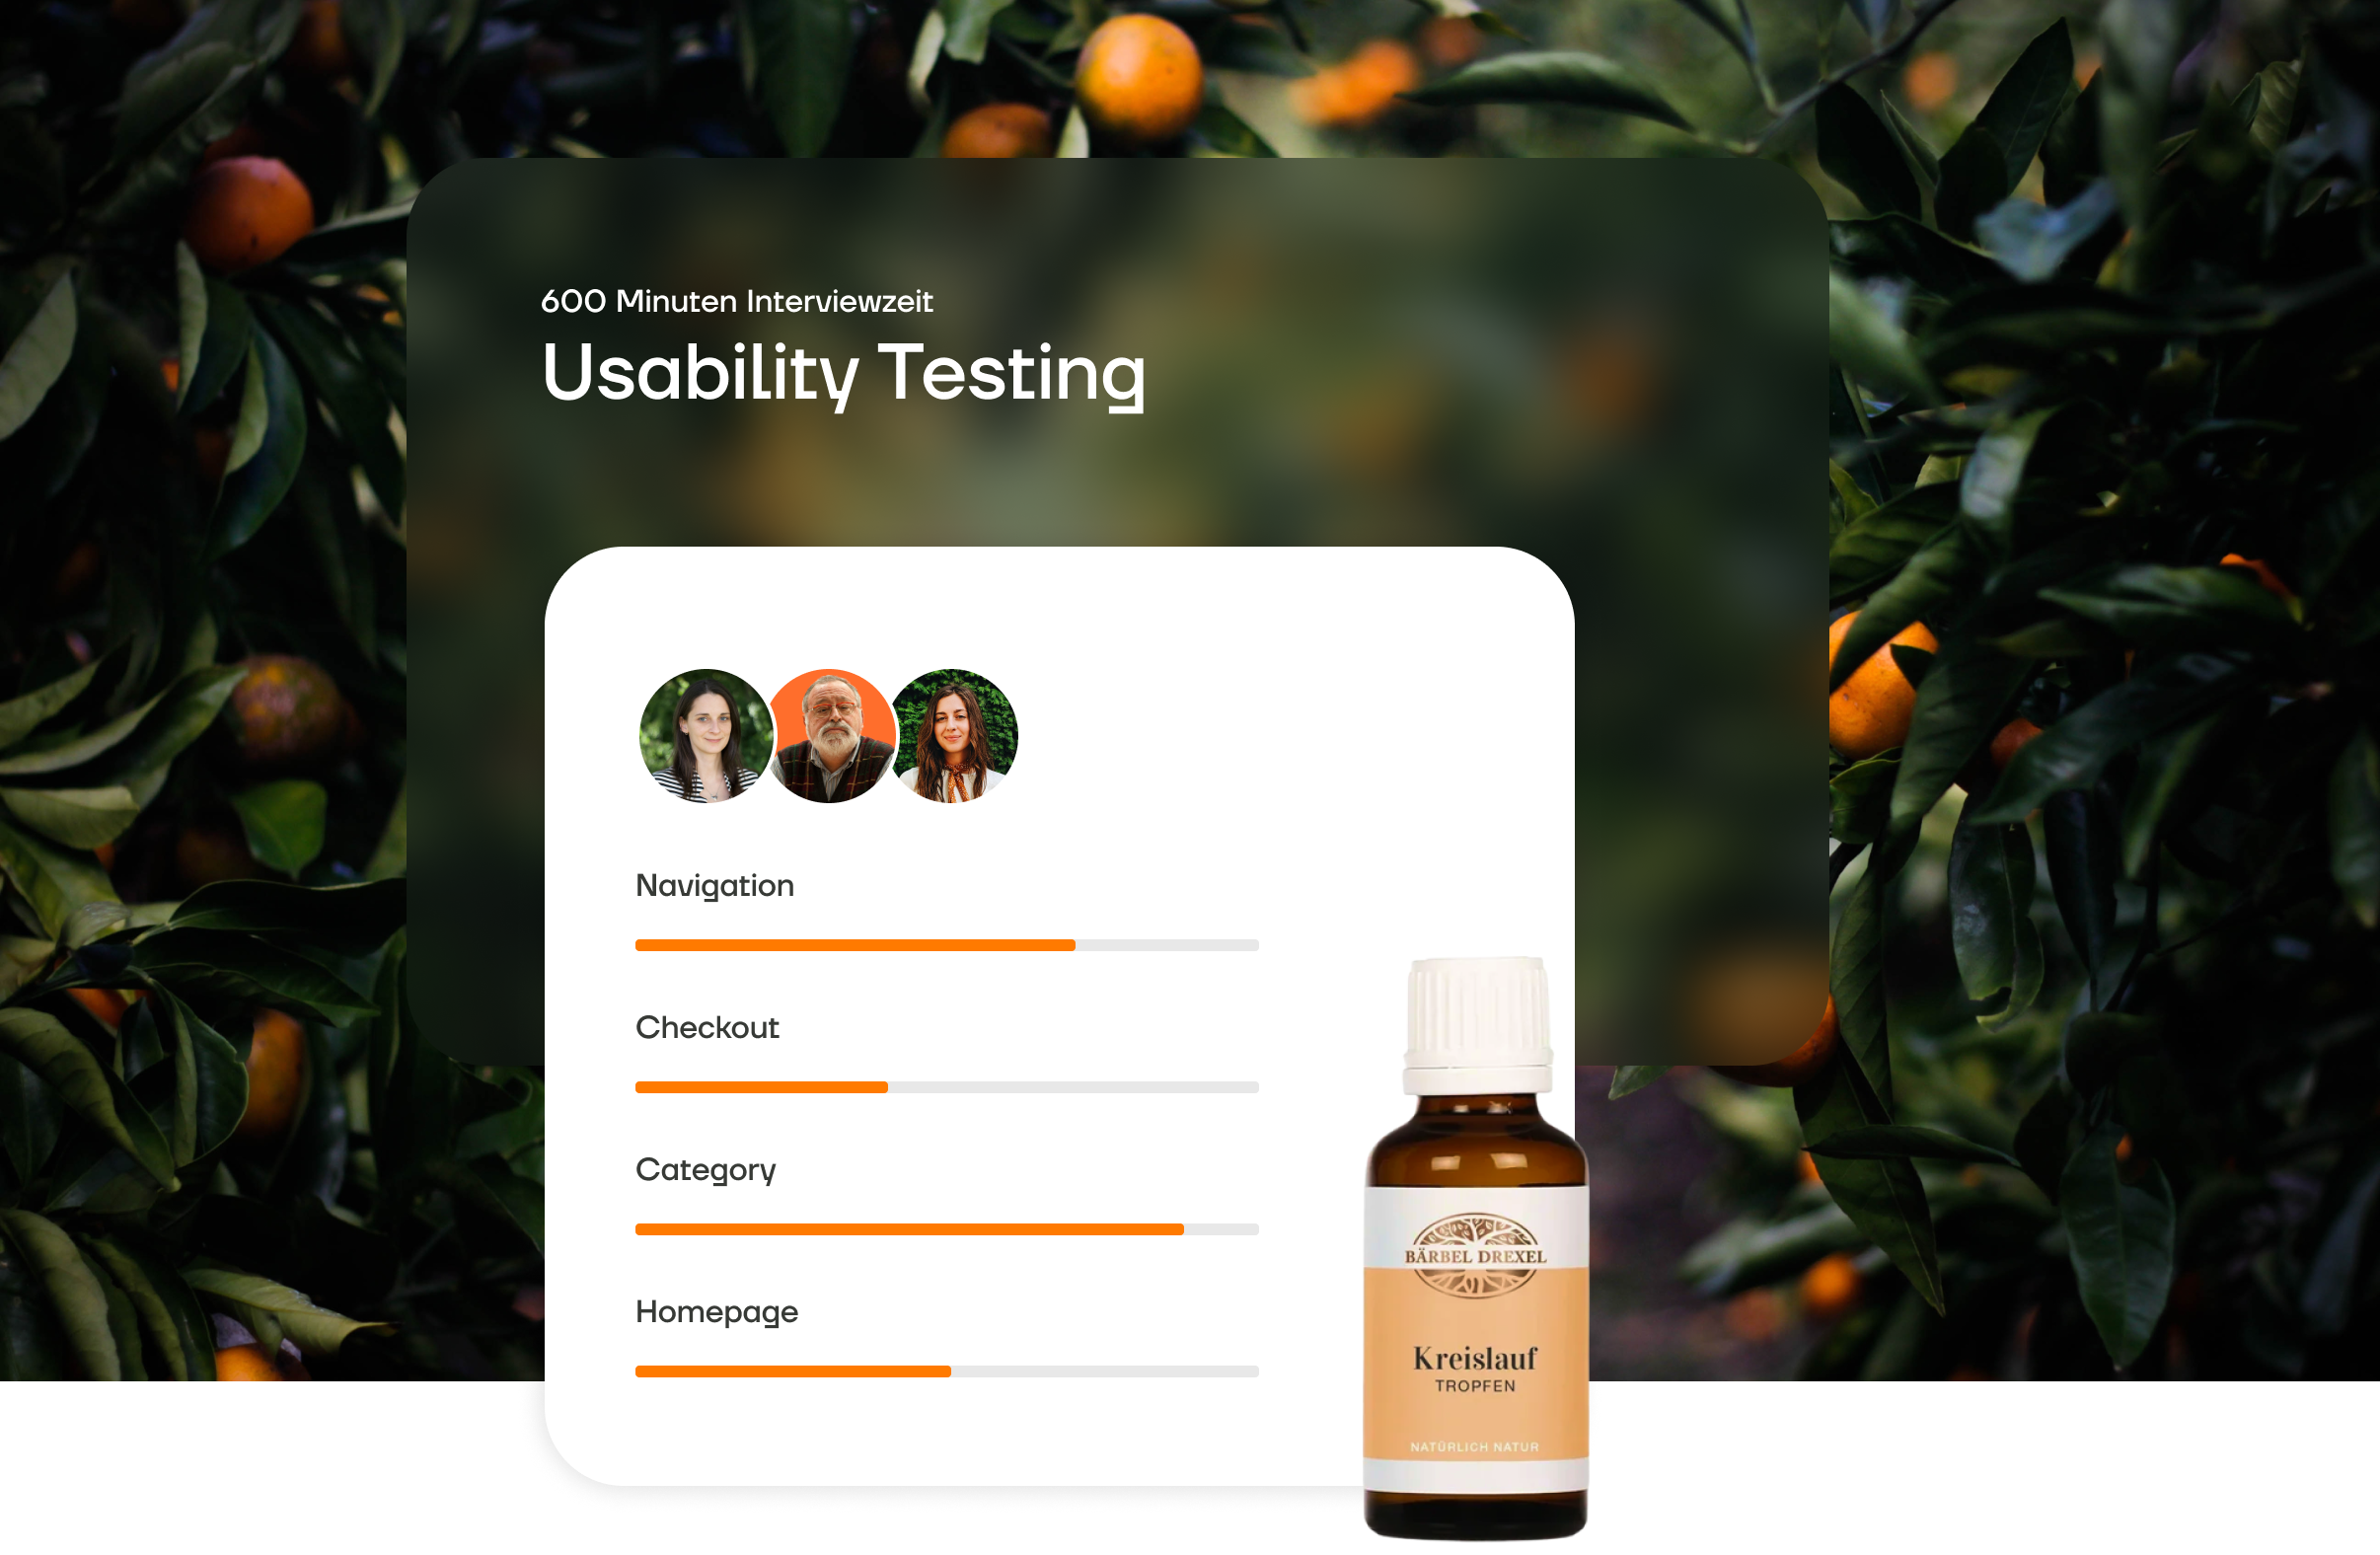 Darstellung einer Auswertung eines Usabilty Tests